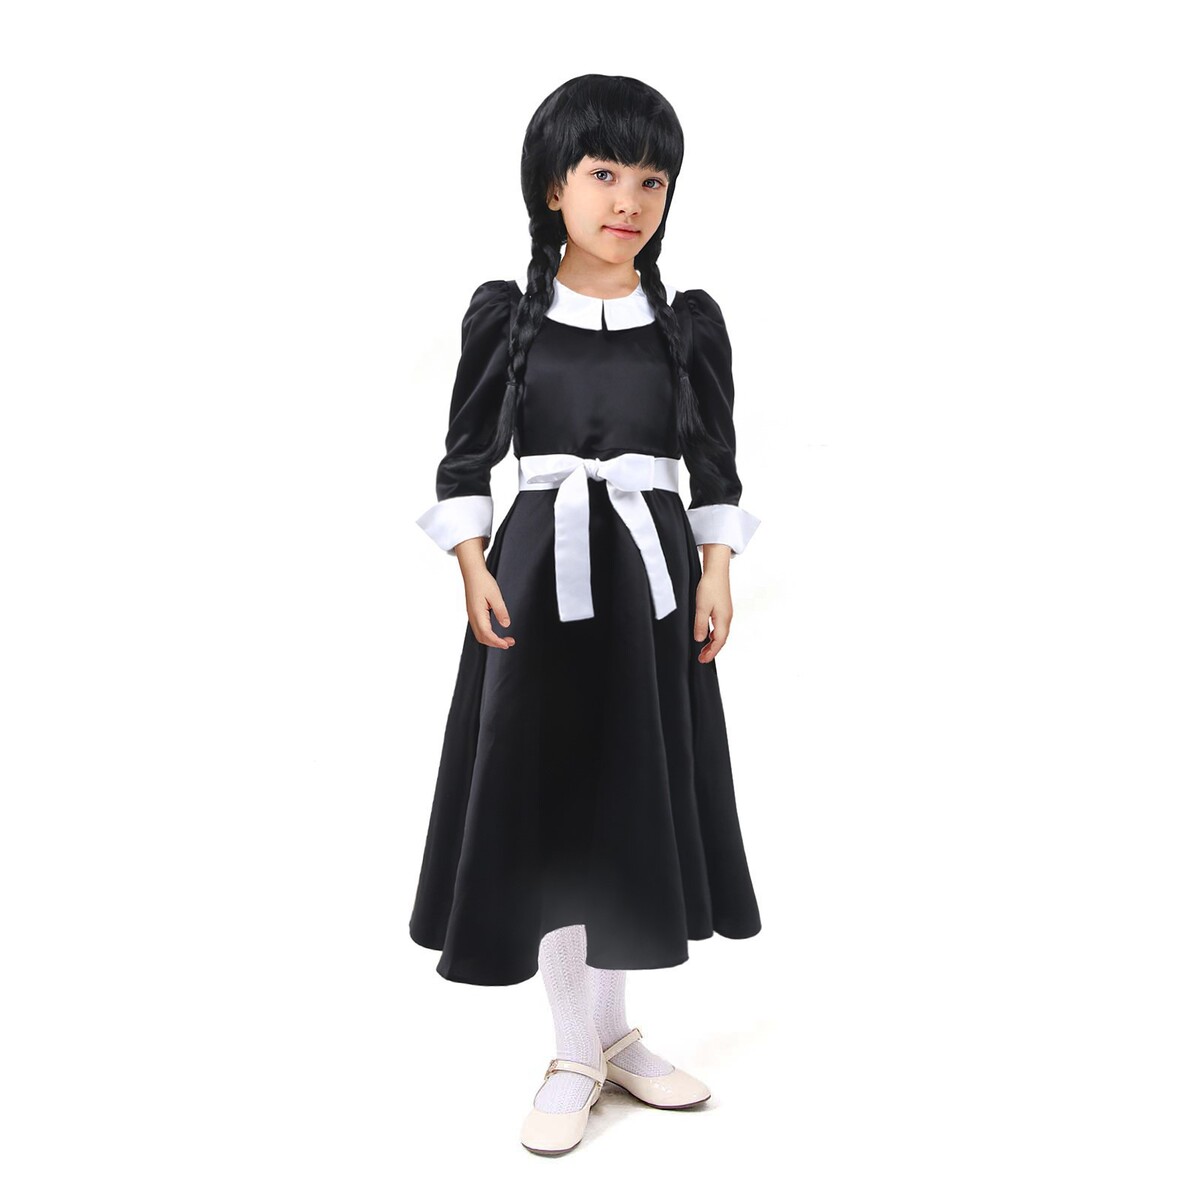 Карнавальное черное платье с белым воротником,атлас,п/э,р-р42,р158 платье с воротником holivin карусель бежевое